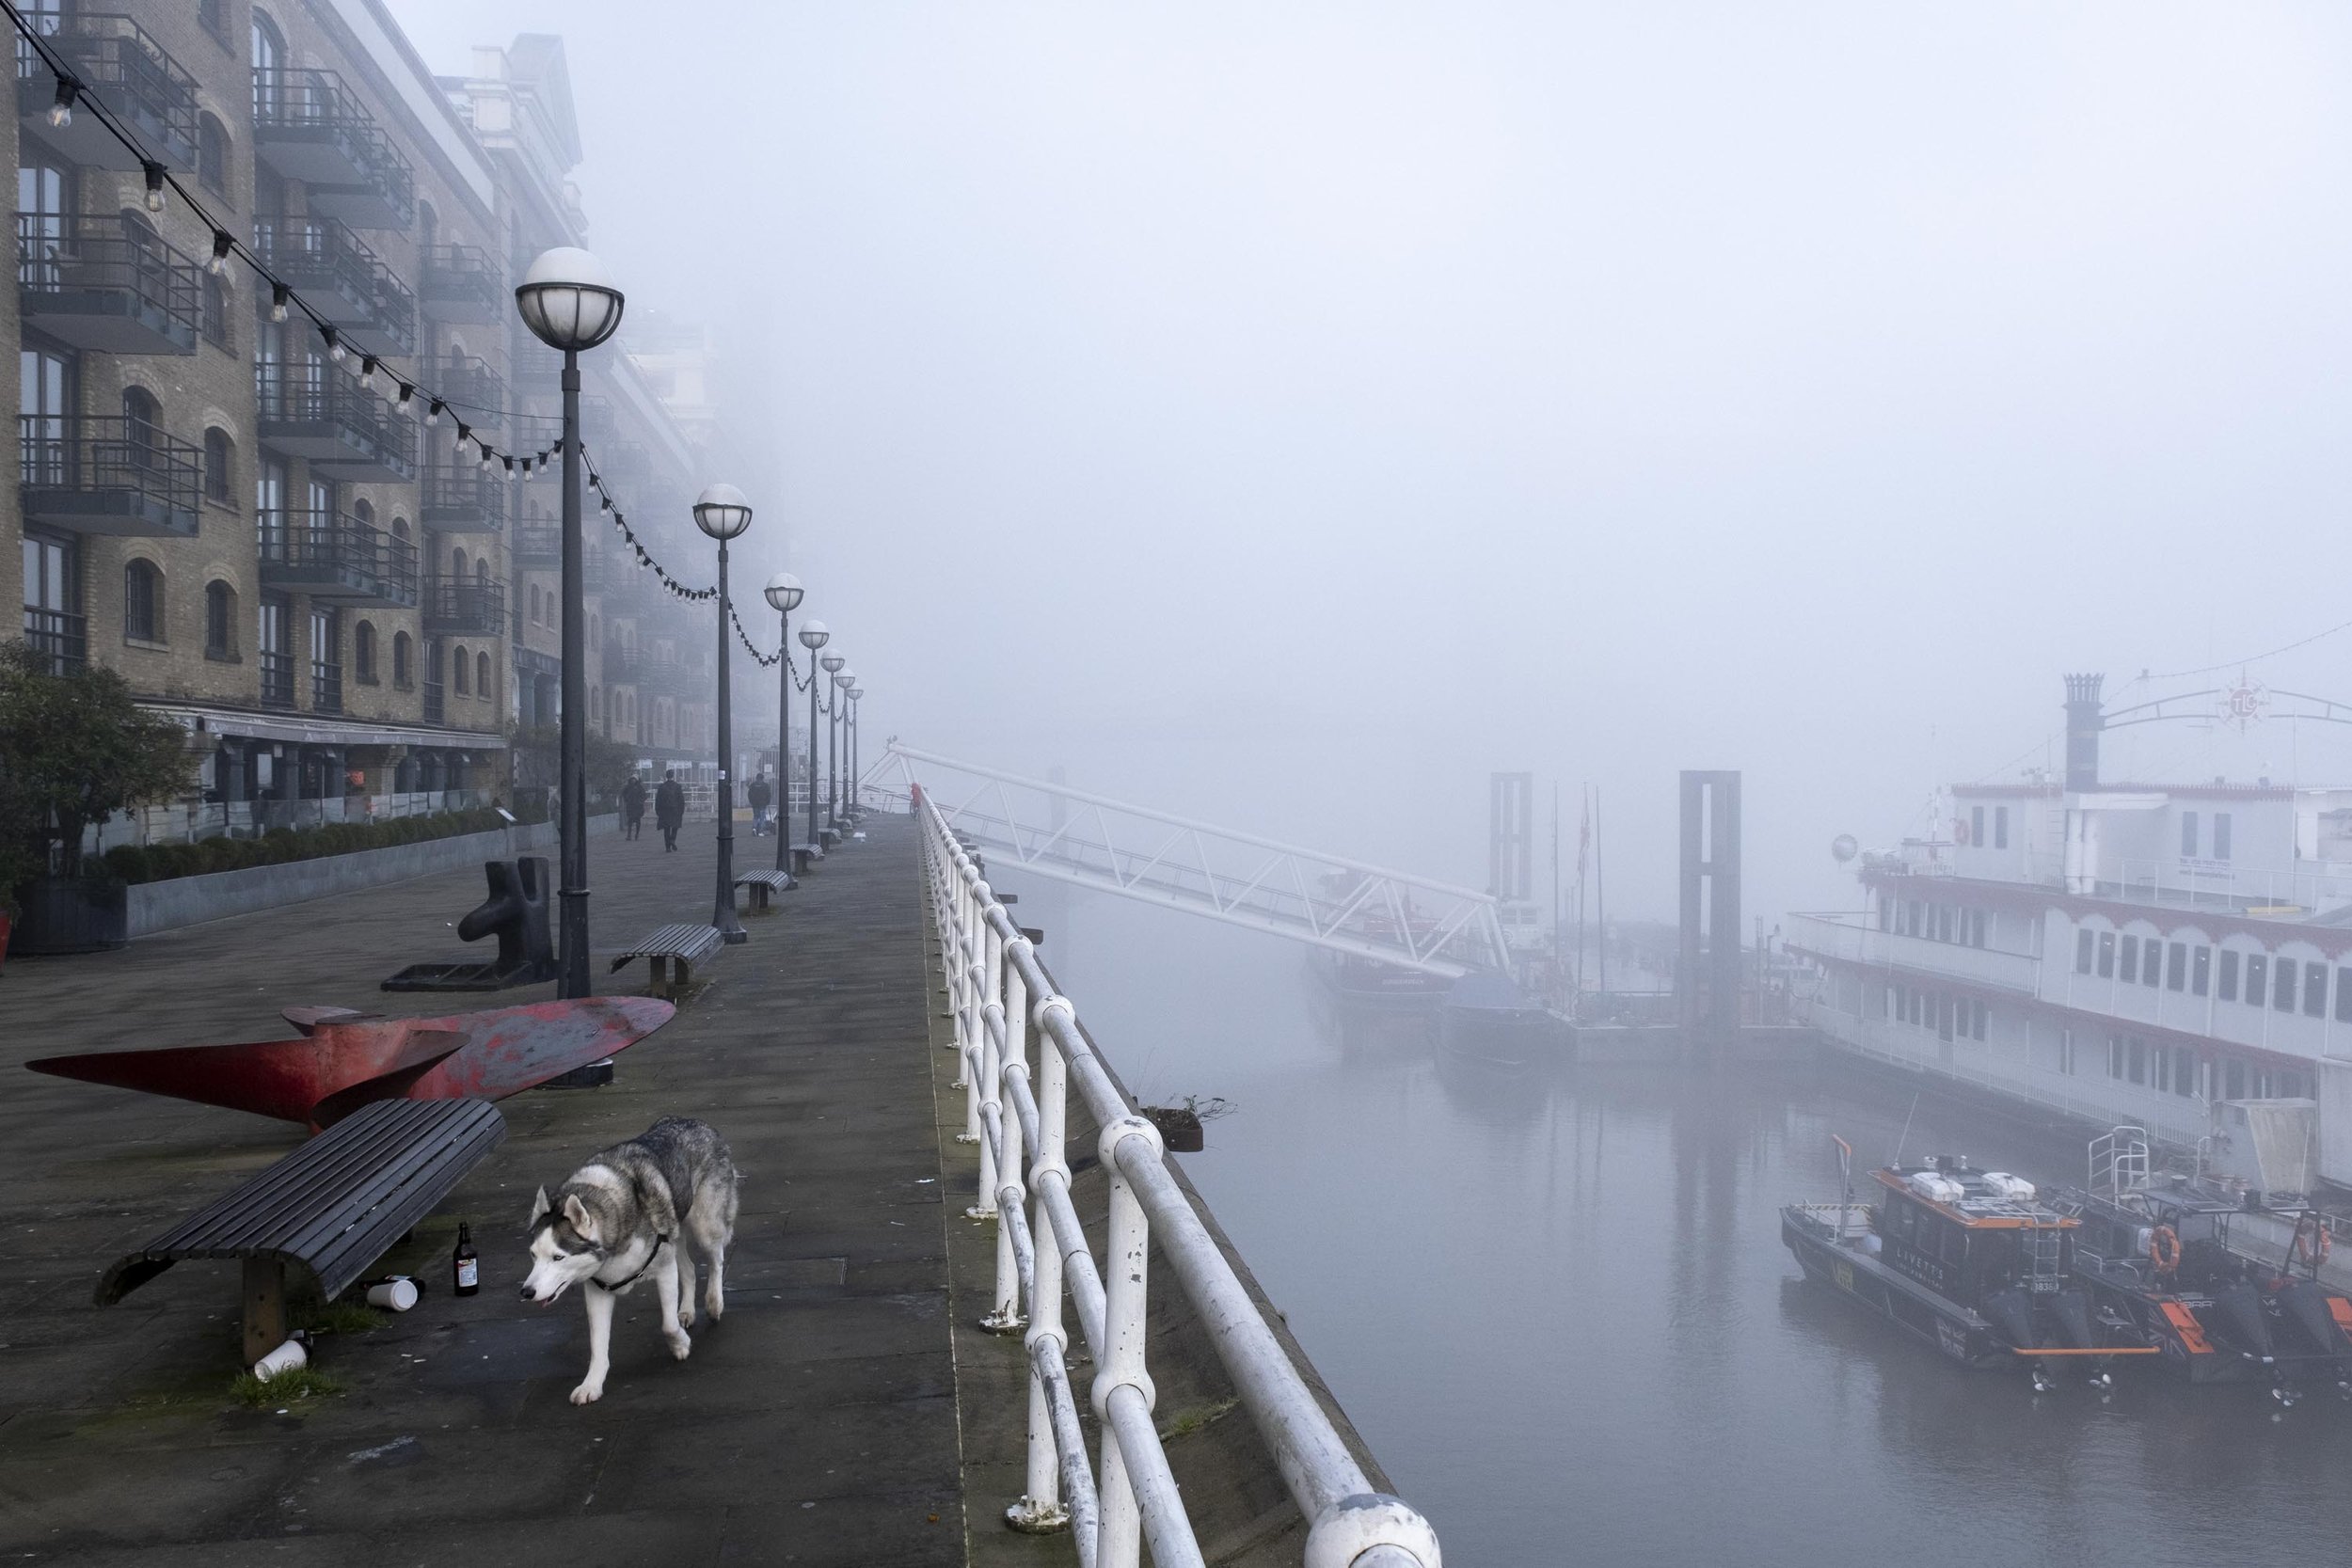 20230208_butlers wharf dog fog_004.jpg